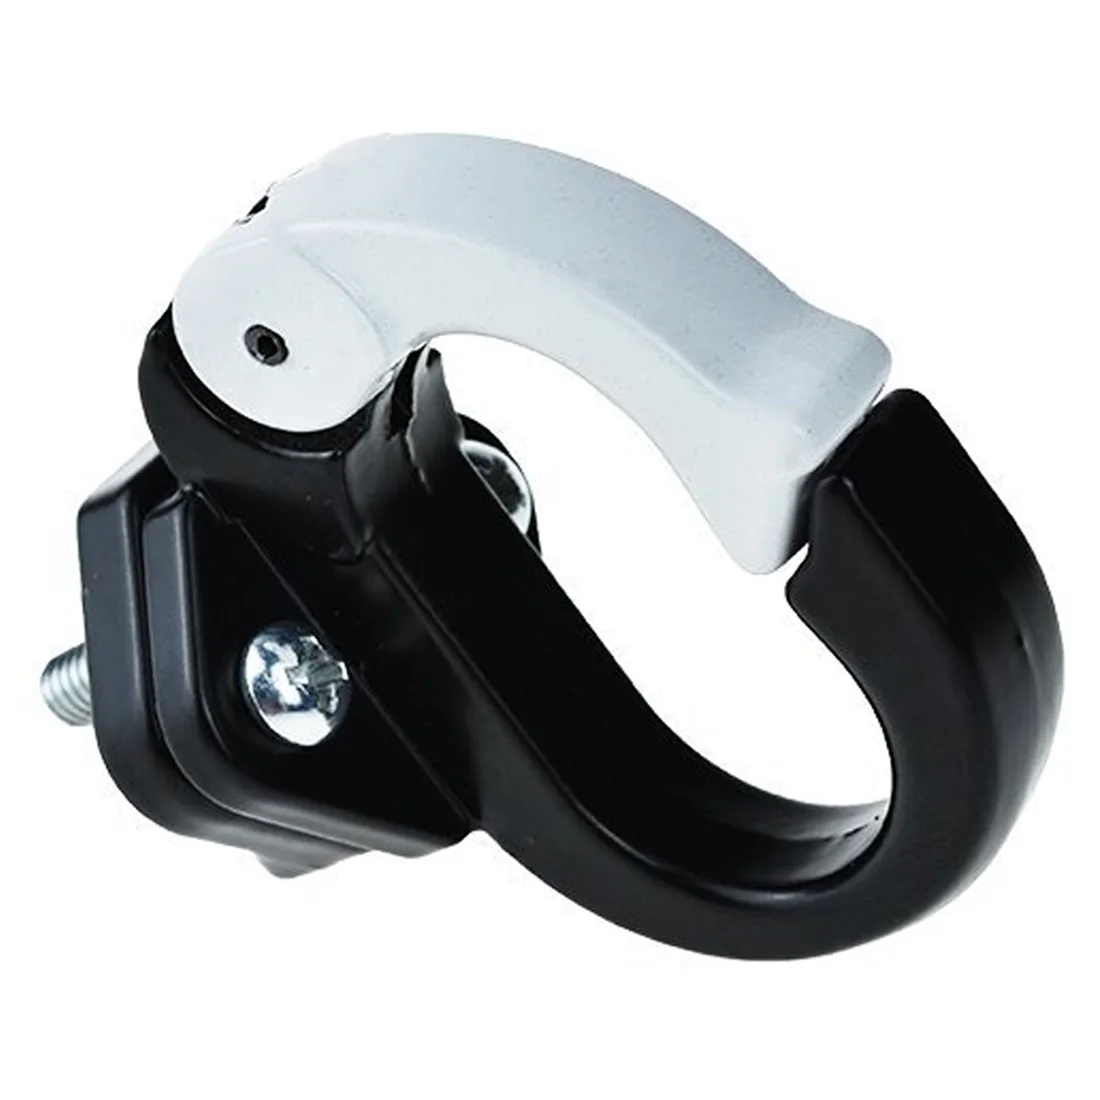 Горячий передний крюк вешалка шлем сумки коготь гаджет скейтборд инструменты бутылка грузовой перевозчик для Xiaomi Mijia M365 Электрический скутер - Цвет: Black